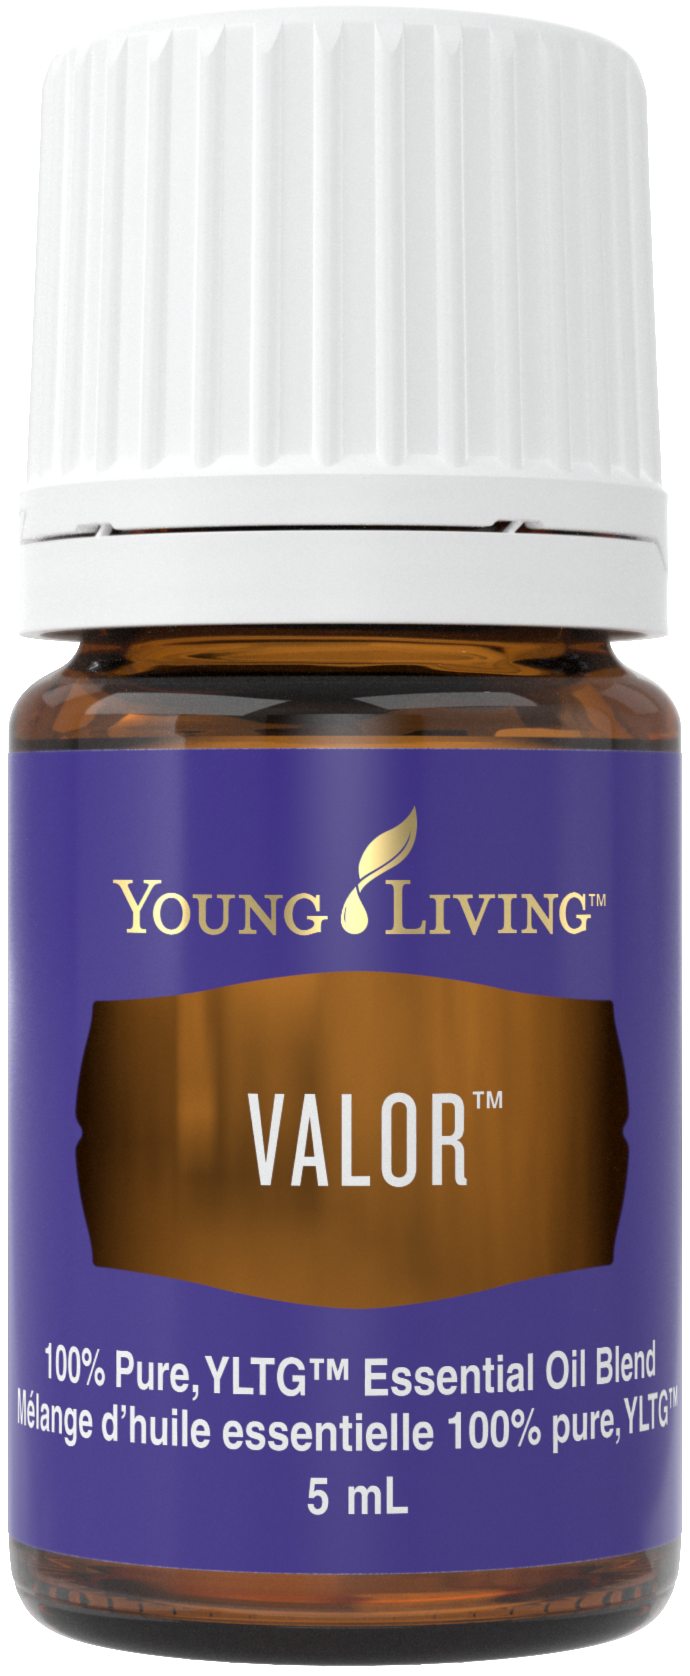 YL - Essential Oil Blend - Valor